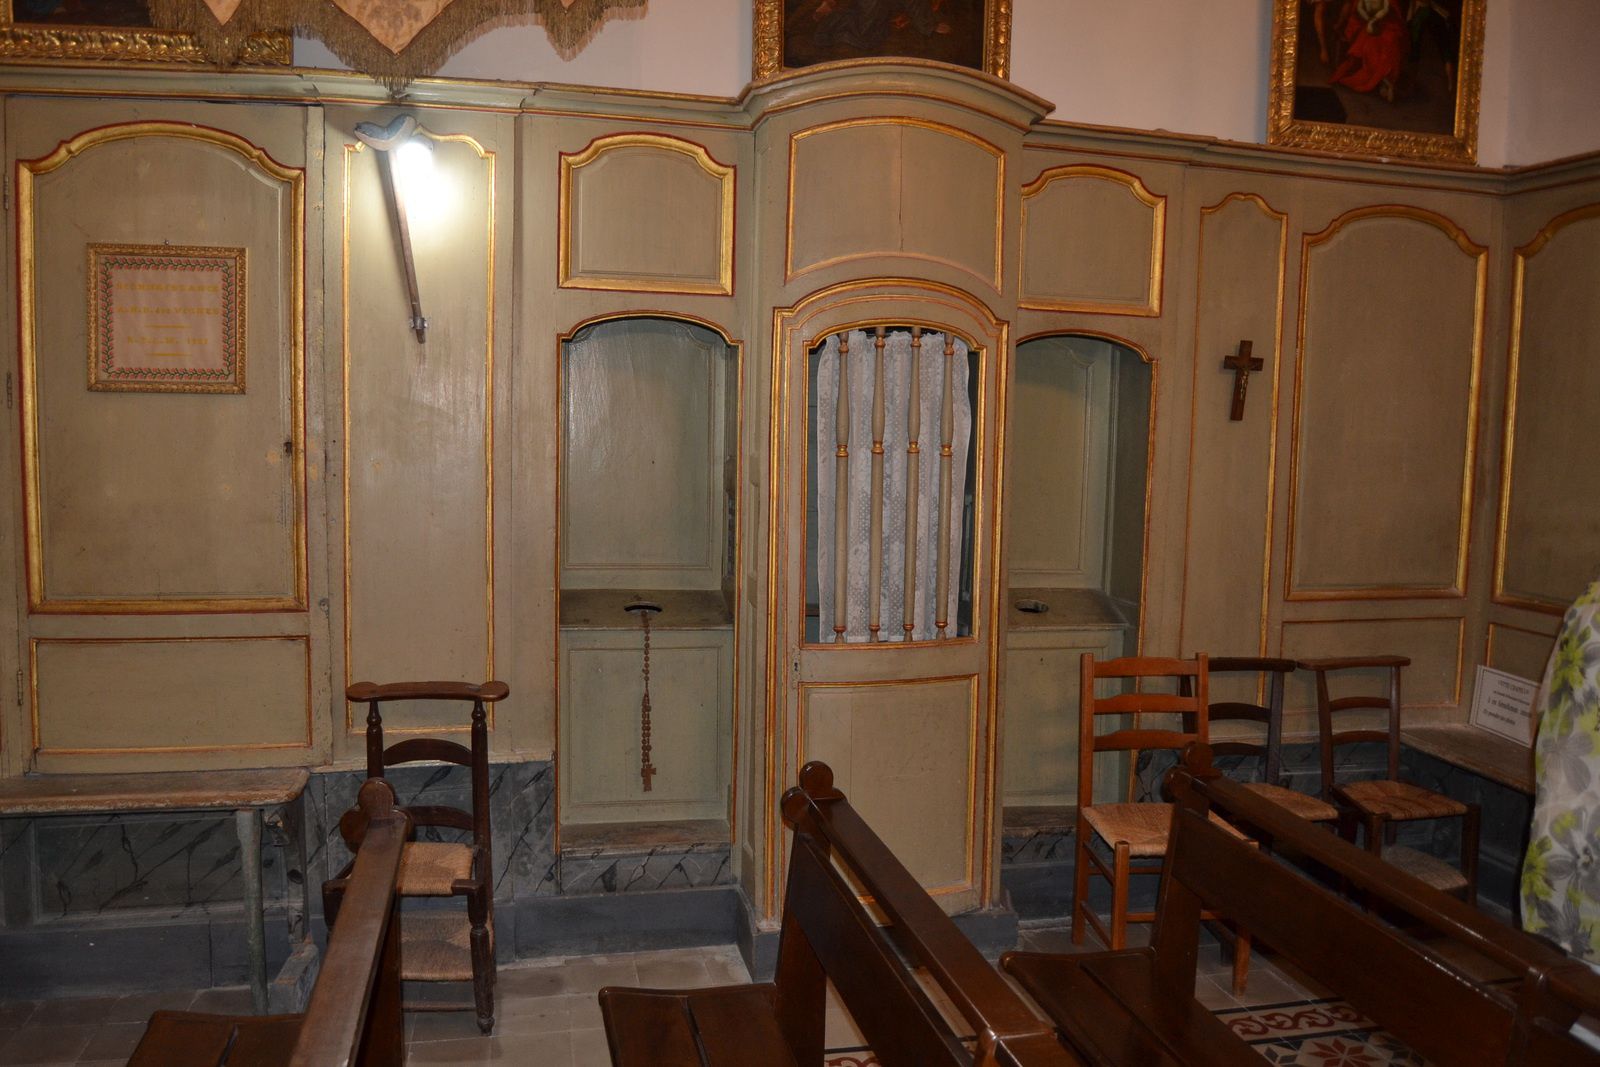 Un confessionnal de chaque côté de l'entrée de la chapelle, laisse penser qu'il il avait record d'affluence dans cette chapelle située pourtant à l'écart du village.